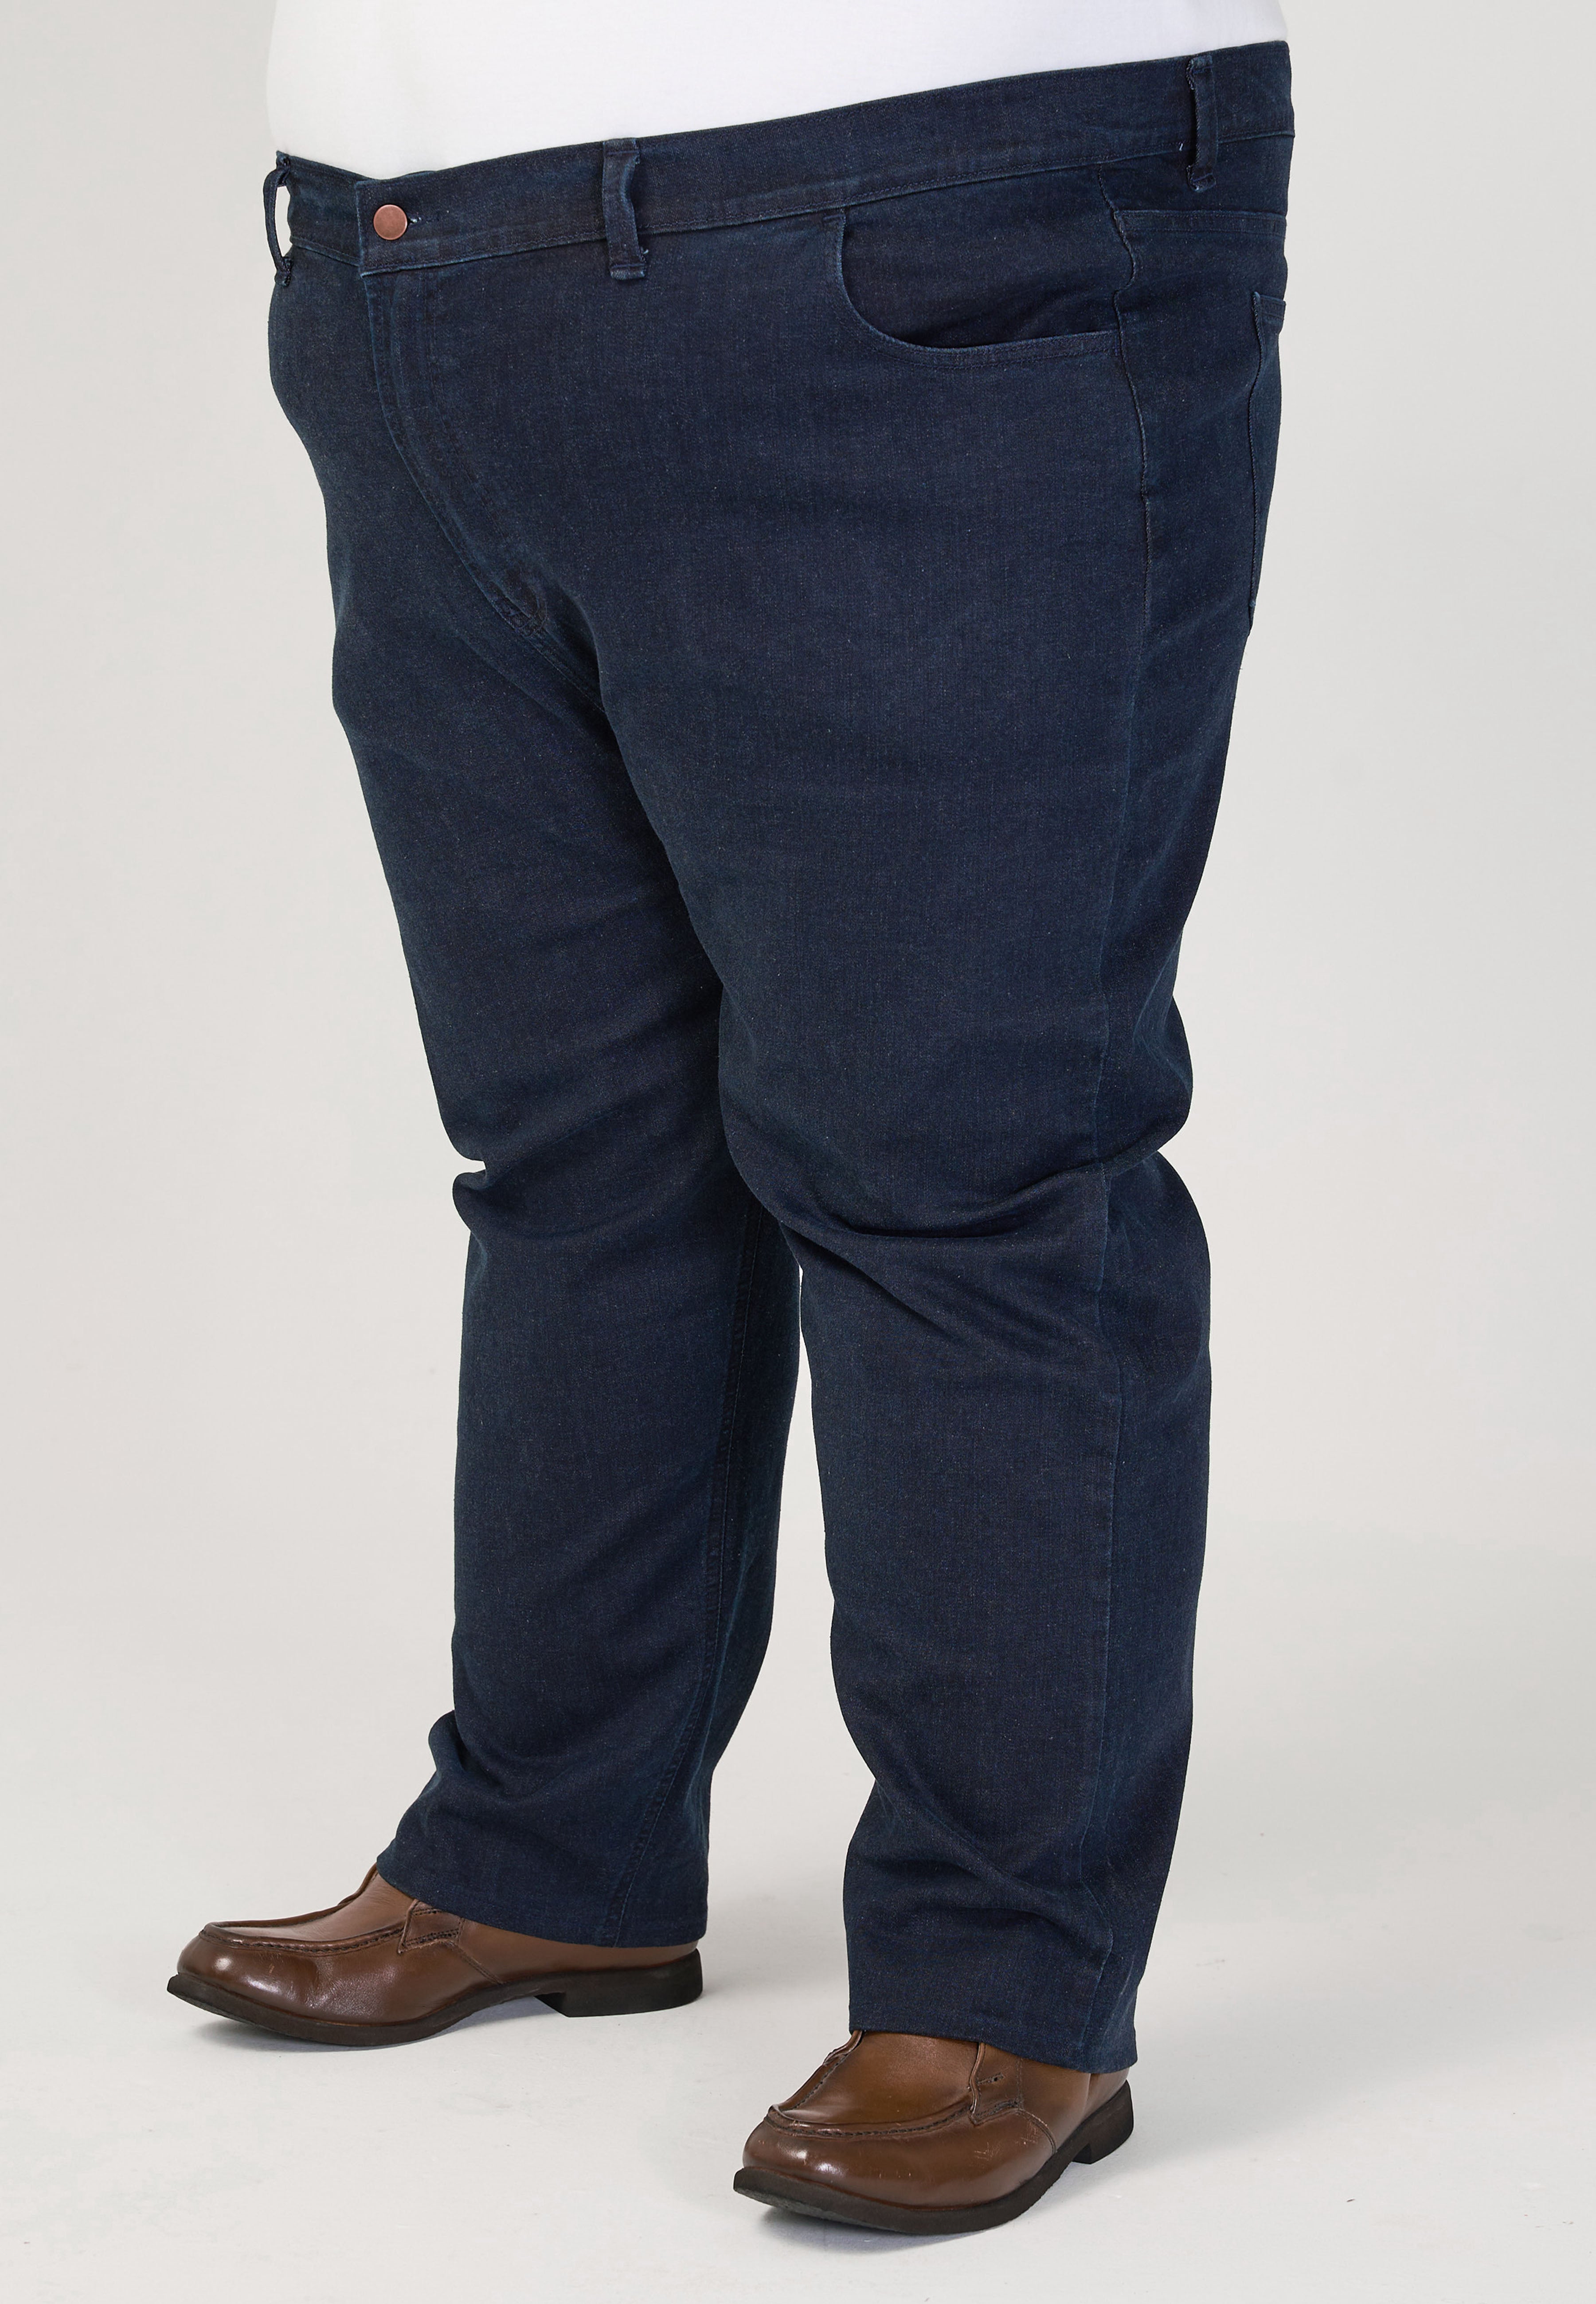 Plus Size Jeans #8341 | Plus Size Stretchable Jeans